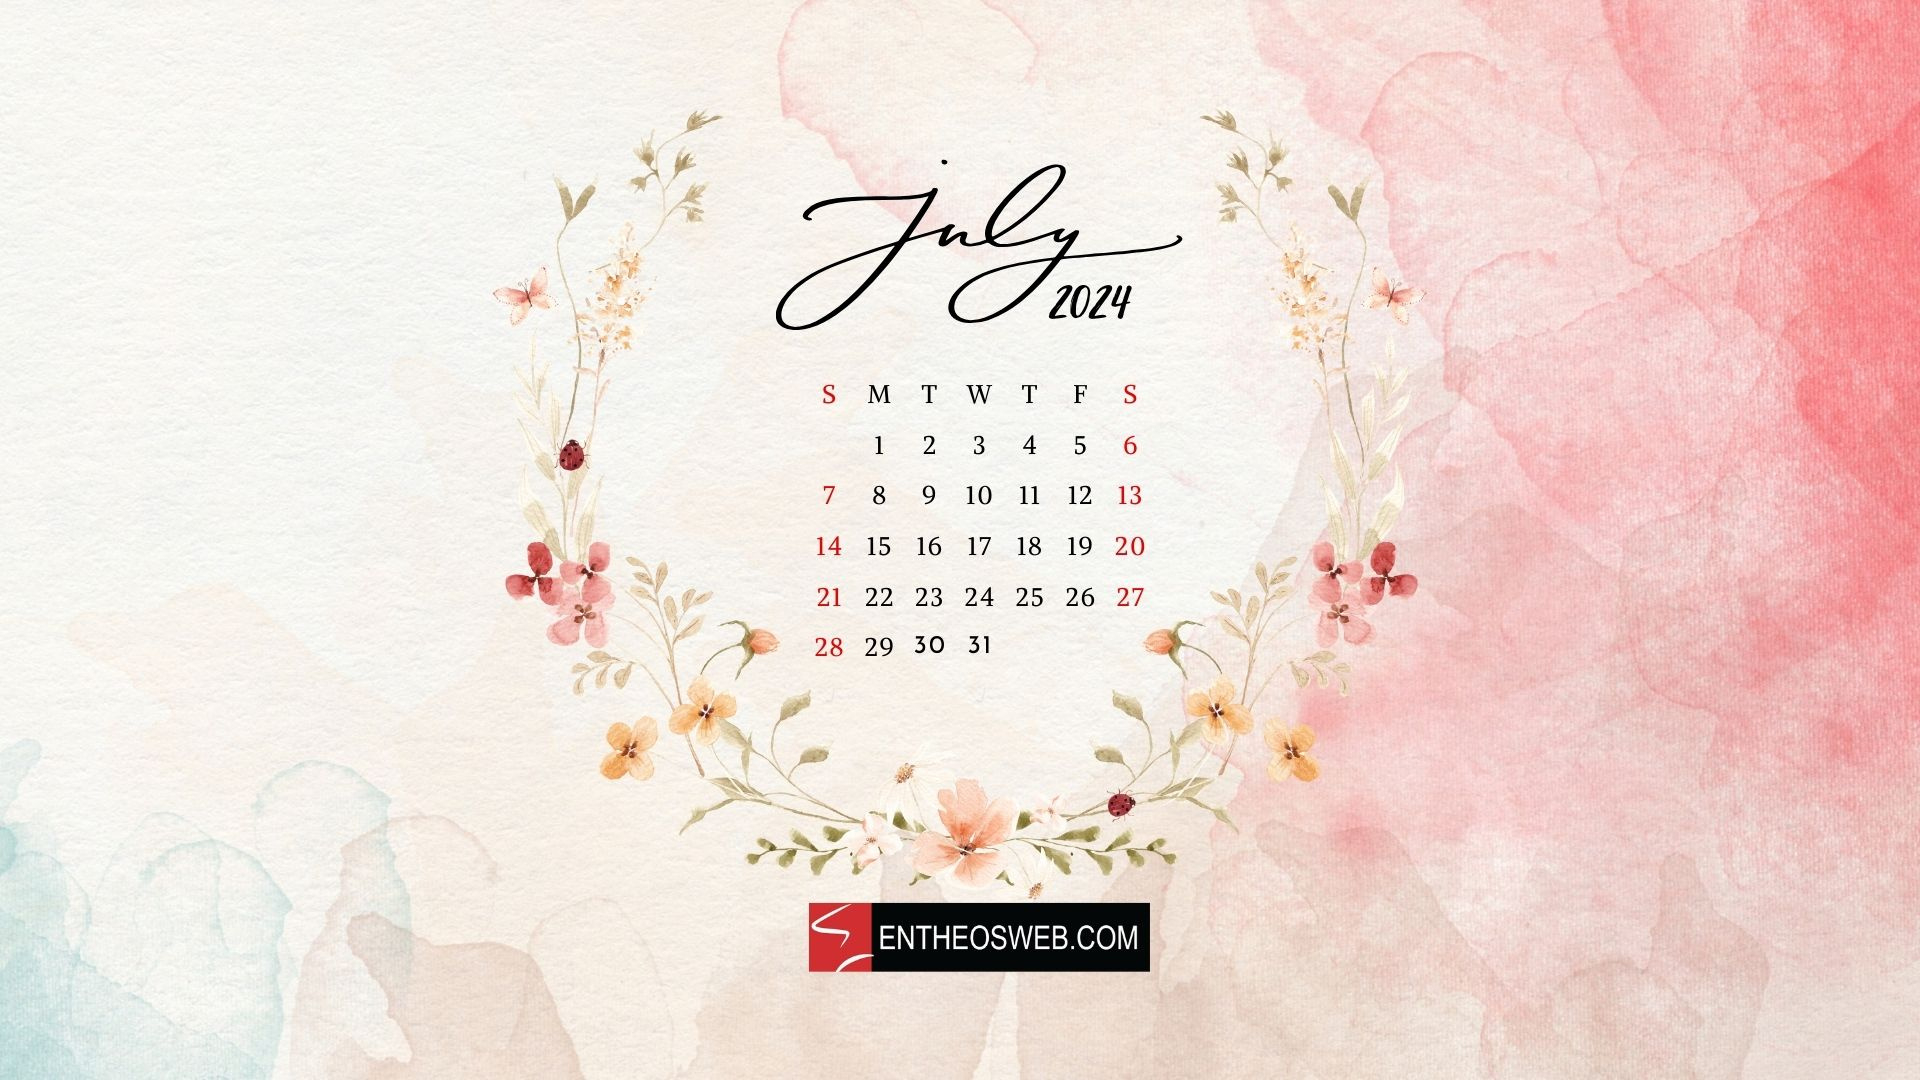 July 2024 Desktop Wallpaper Calendar | Entheosweb in July 2024 Wallpaper Calendar